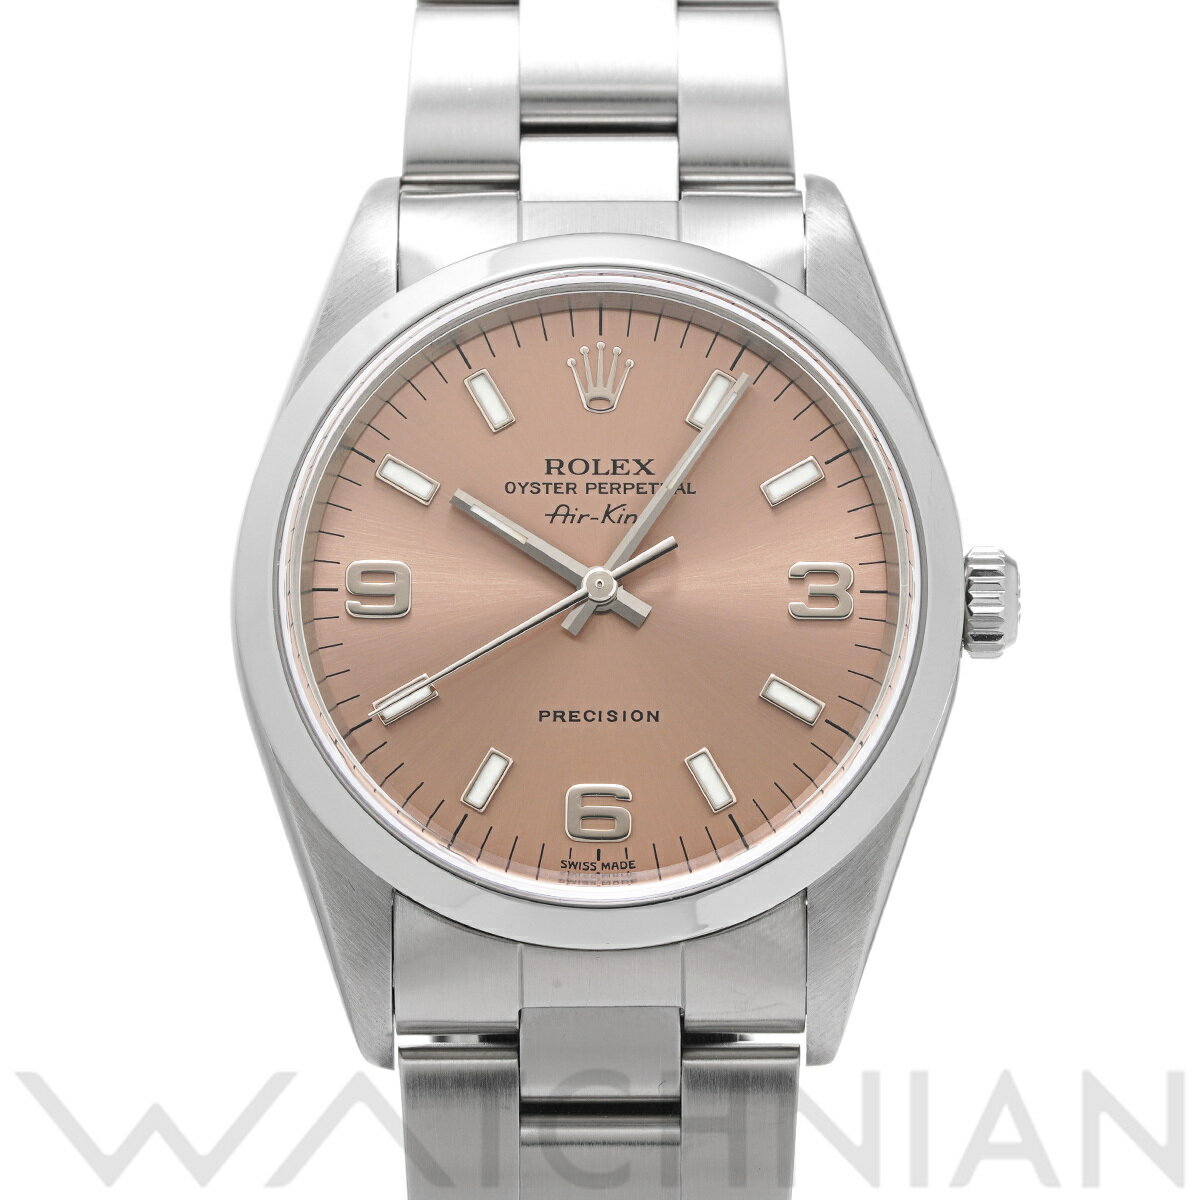 【4種選べるクーポン】【ローン60回払い無金利】【中古】 ロレックス ROLEX エアキング 14000 A番(1998年頃製造) ピンク メンズ 腕時計 ロレックス 時計 高級腕時計 ブランド